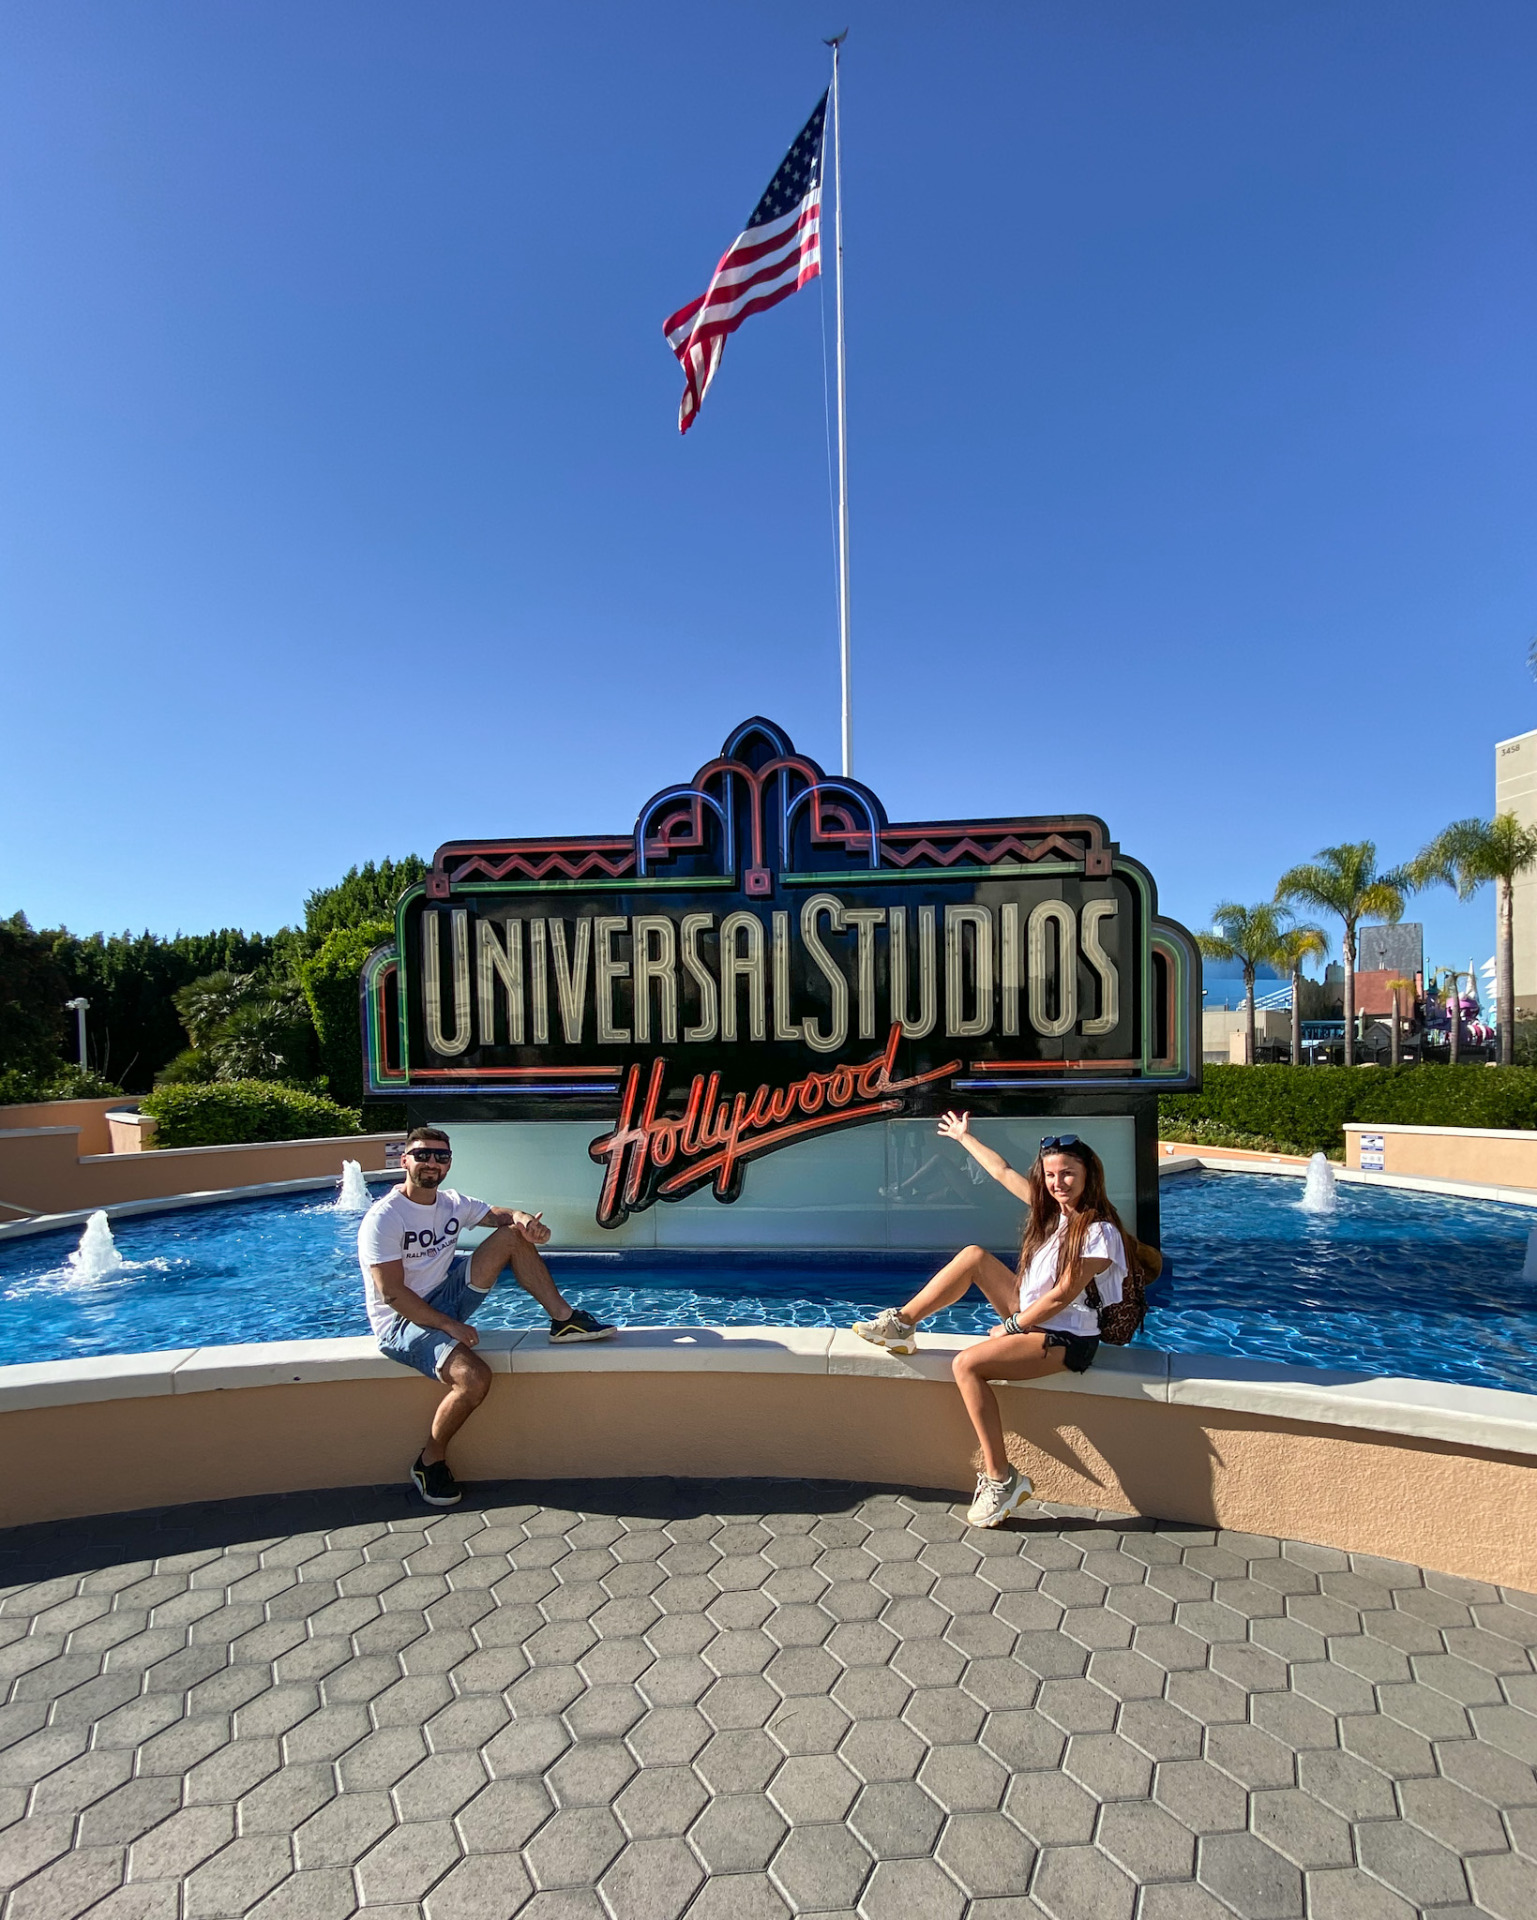 Pani Edyta i Pan Krzysztof siedzą pod znakiem wytwórni Universal Studios.